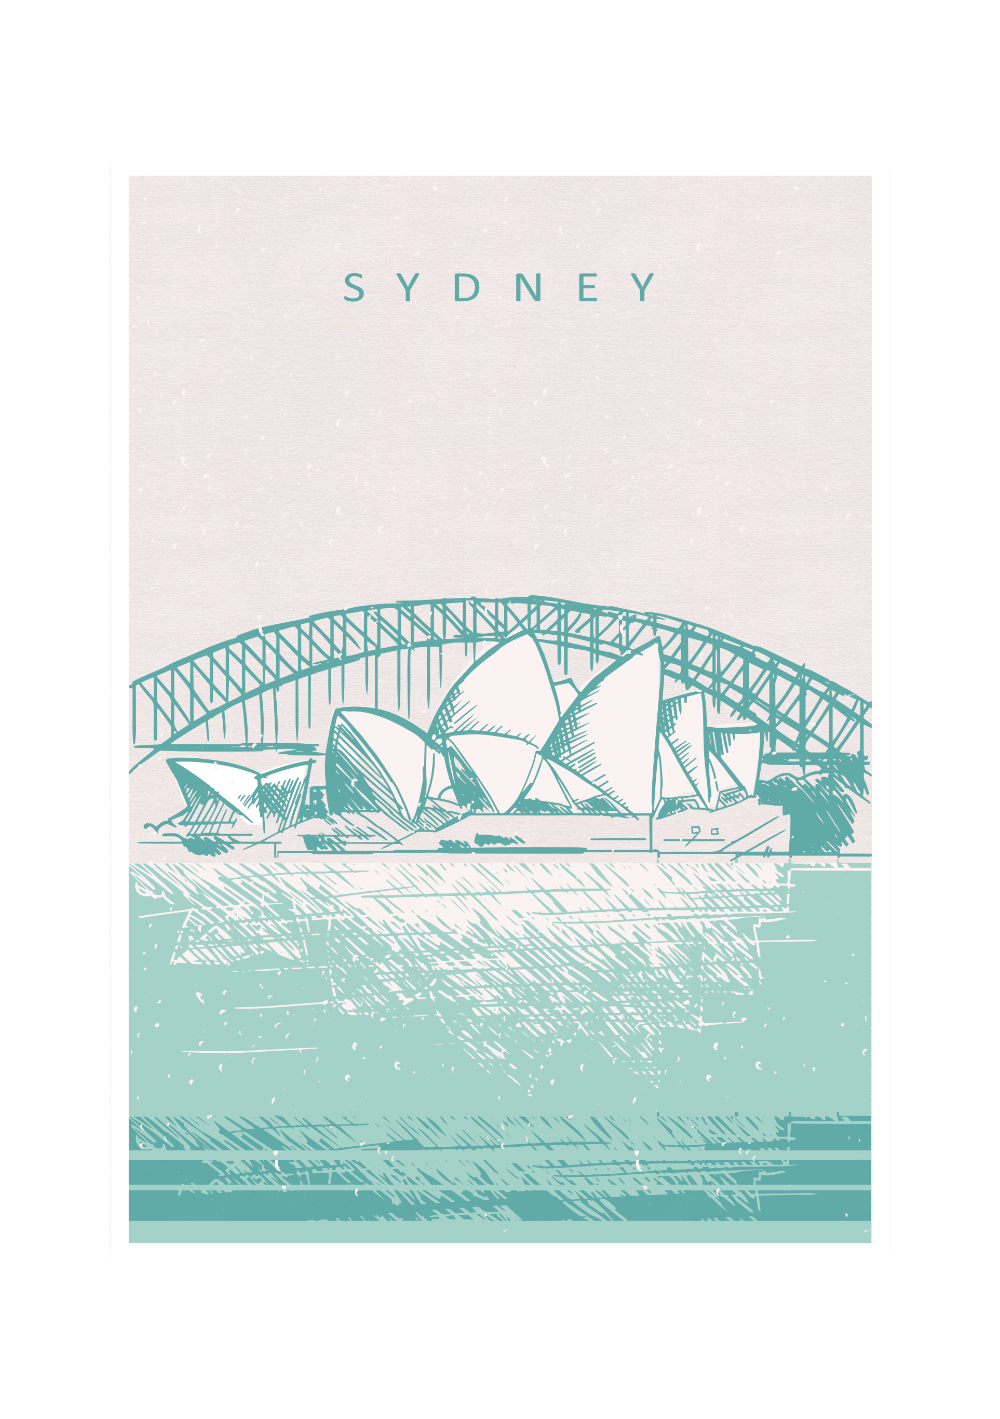 Das Poster zeigt dir eine gezeichnete Darstellung des Opernhauses in Sydney, Australien. 